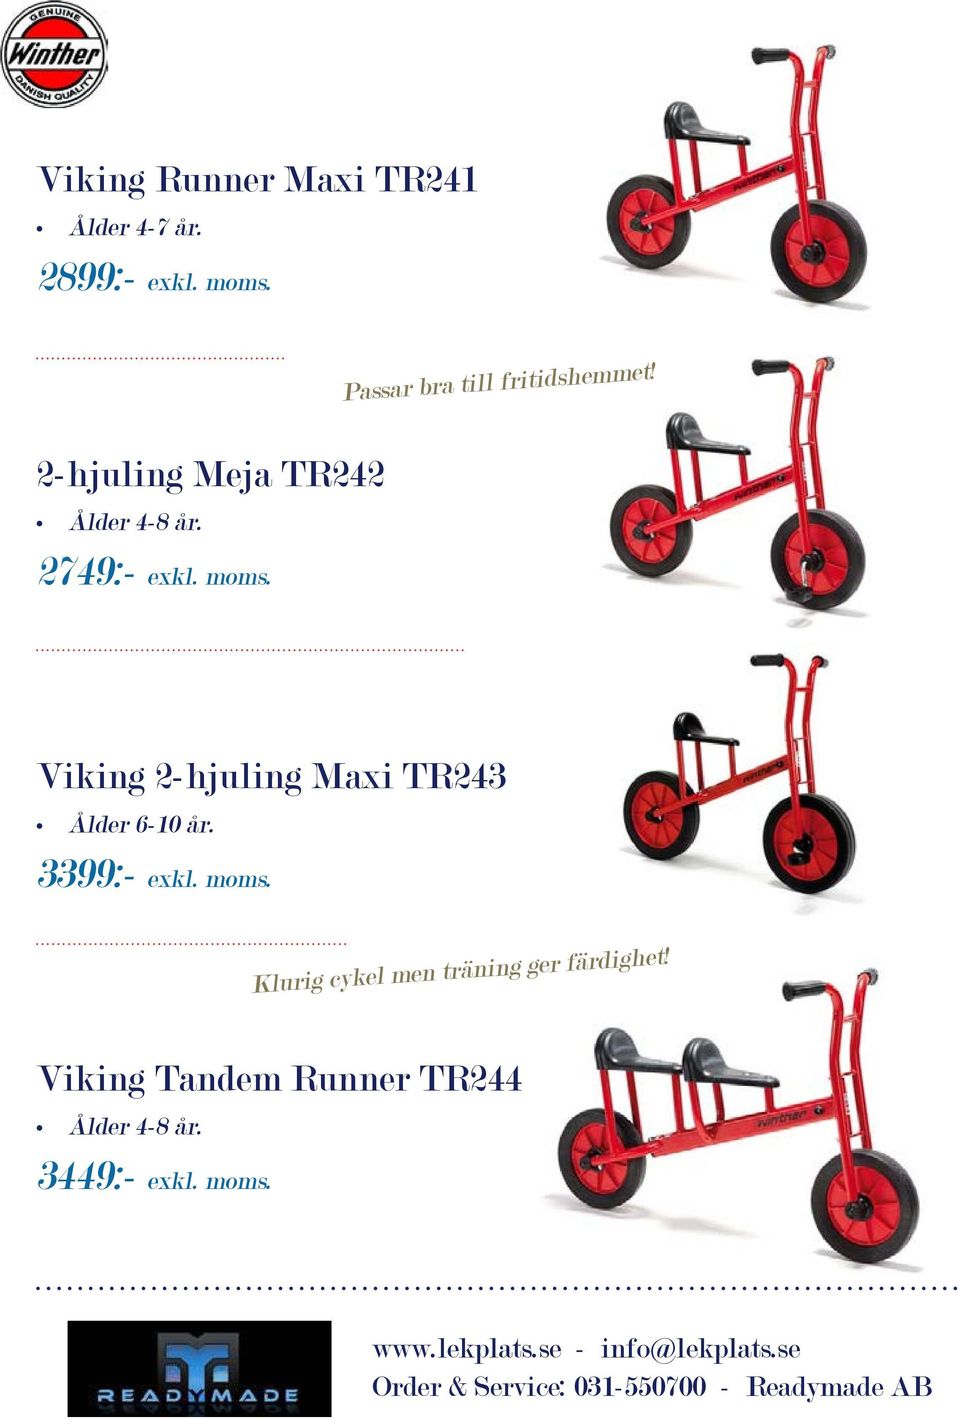 2749:- exkl. moms. Viking 2-hjuling Maxi TR243 Ålder 6-10 år. 3399:- exkl.